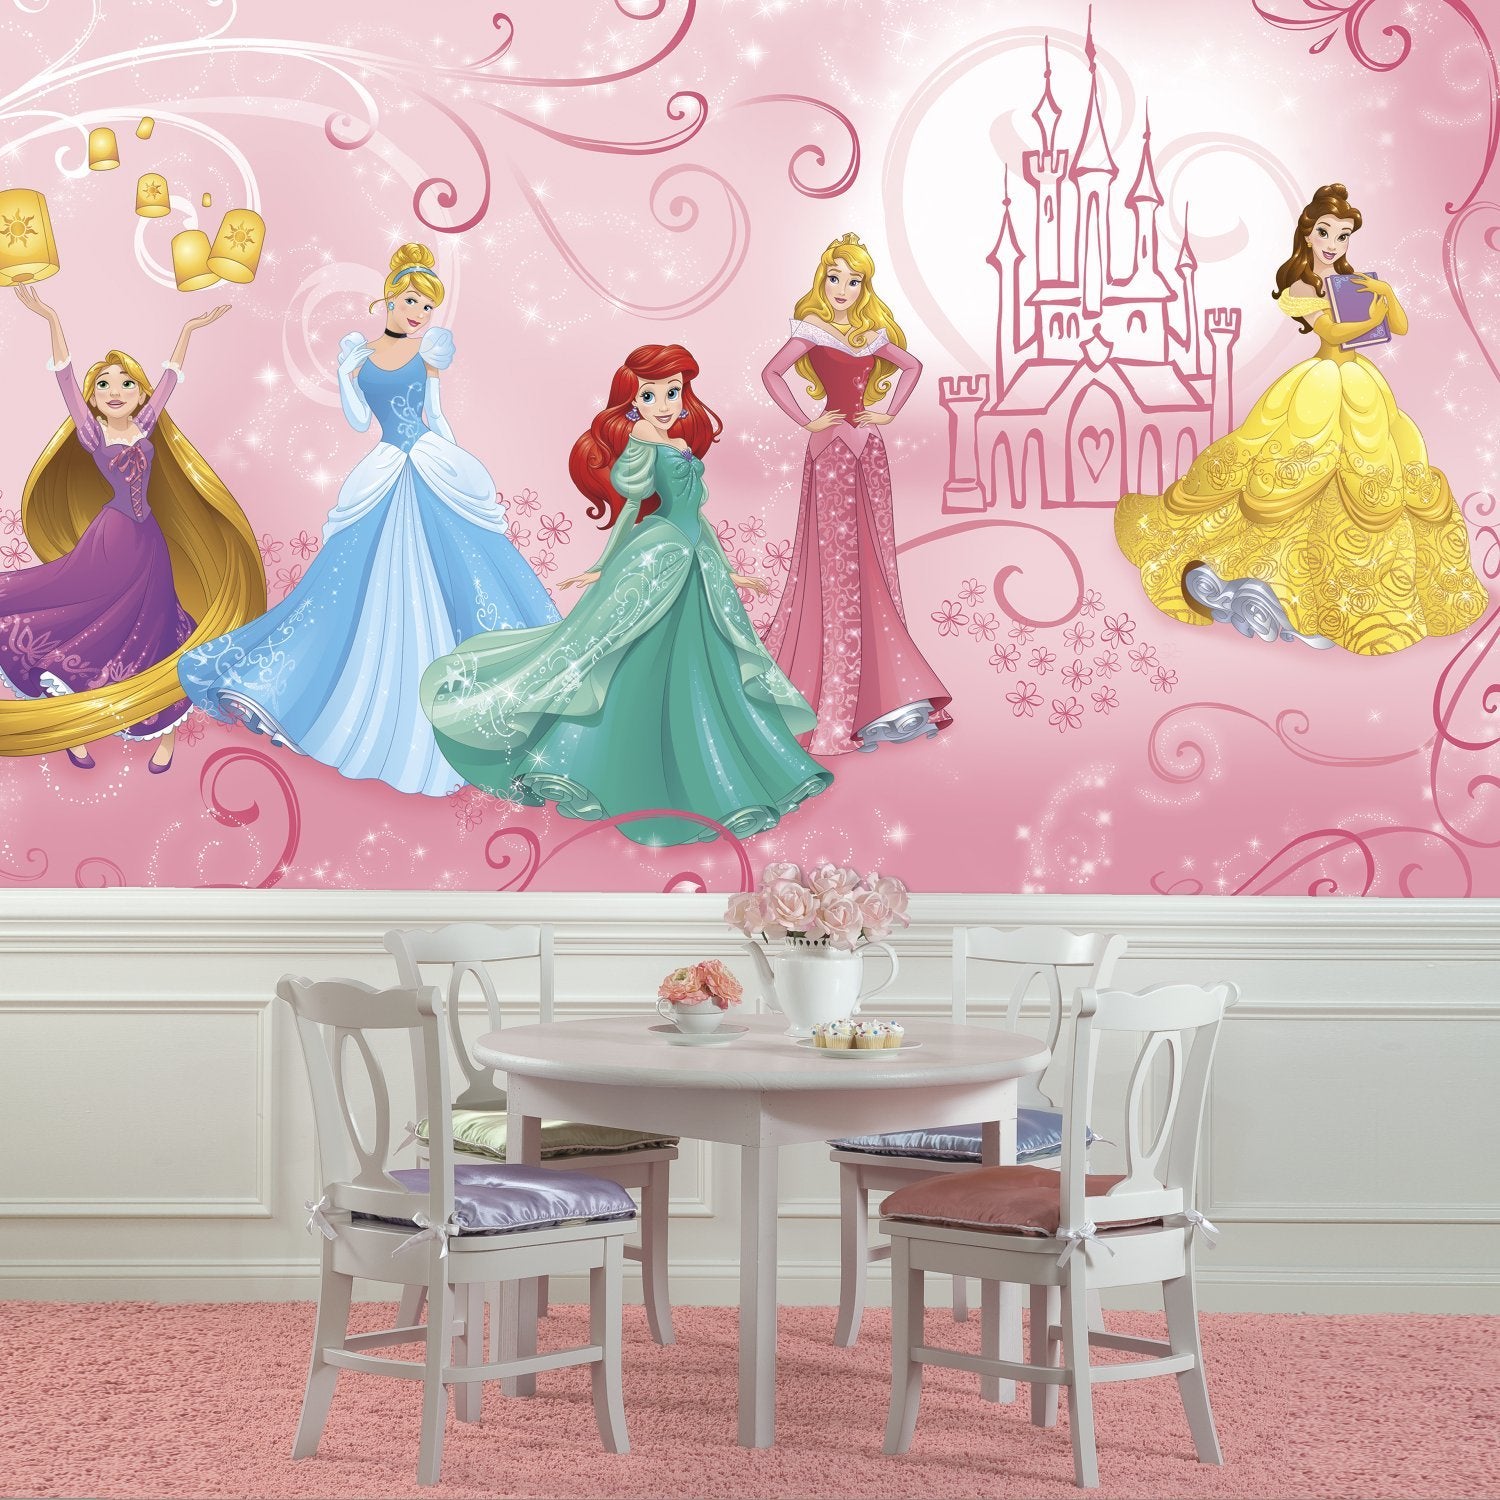 Papier peint Panoramique Encollé Princesses Disney 320X182 CM